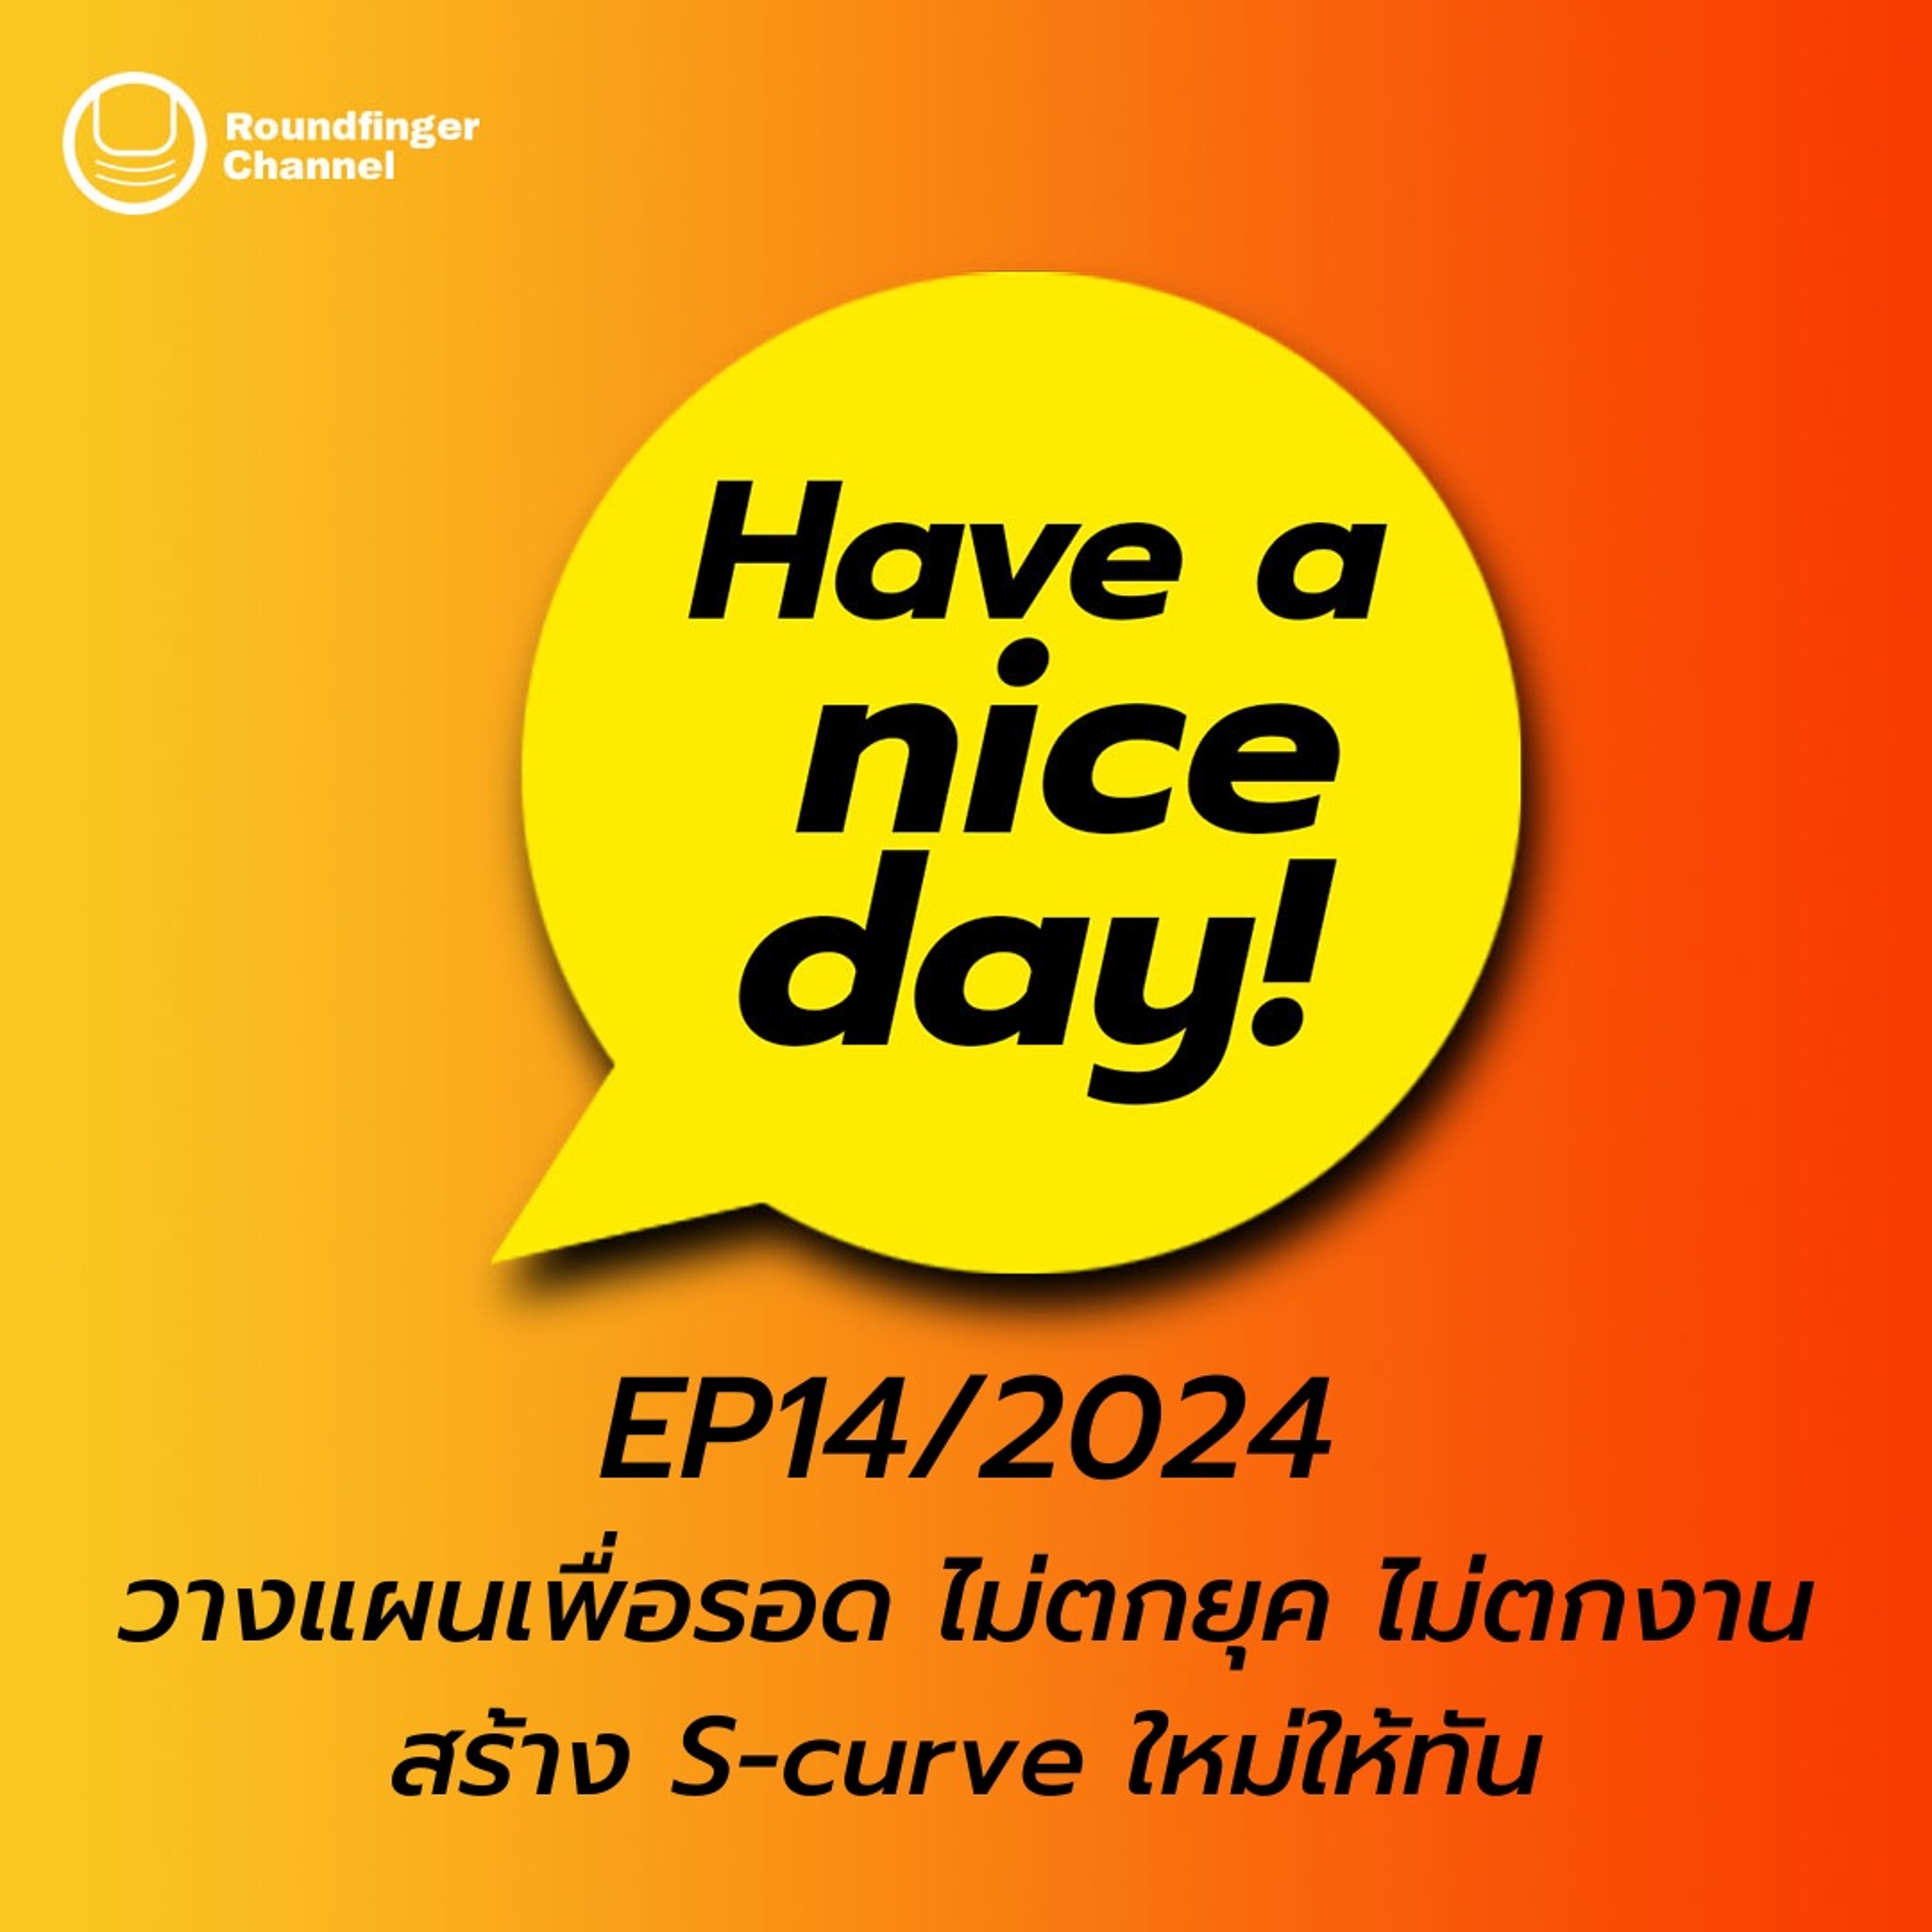 วางแผนเพื่อรอด ไม่ตกยุค ไม่ตกงาน สร้าง S - Curve ใหม่ให้ทัน | Have A Nice Day! EP14/2024